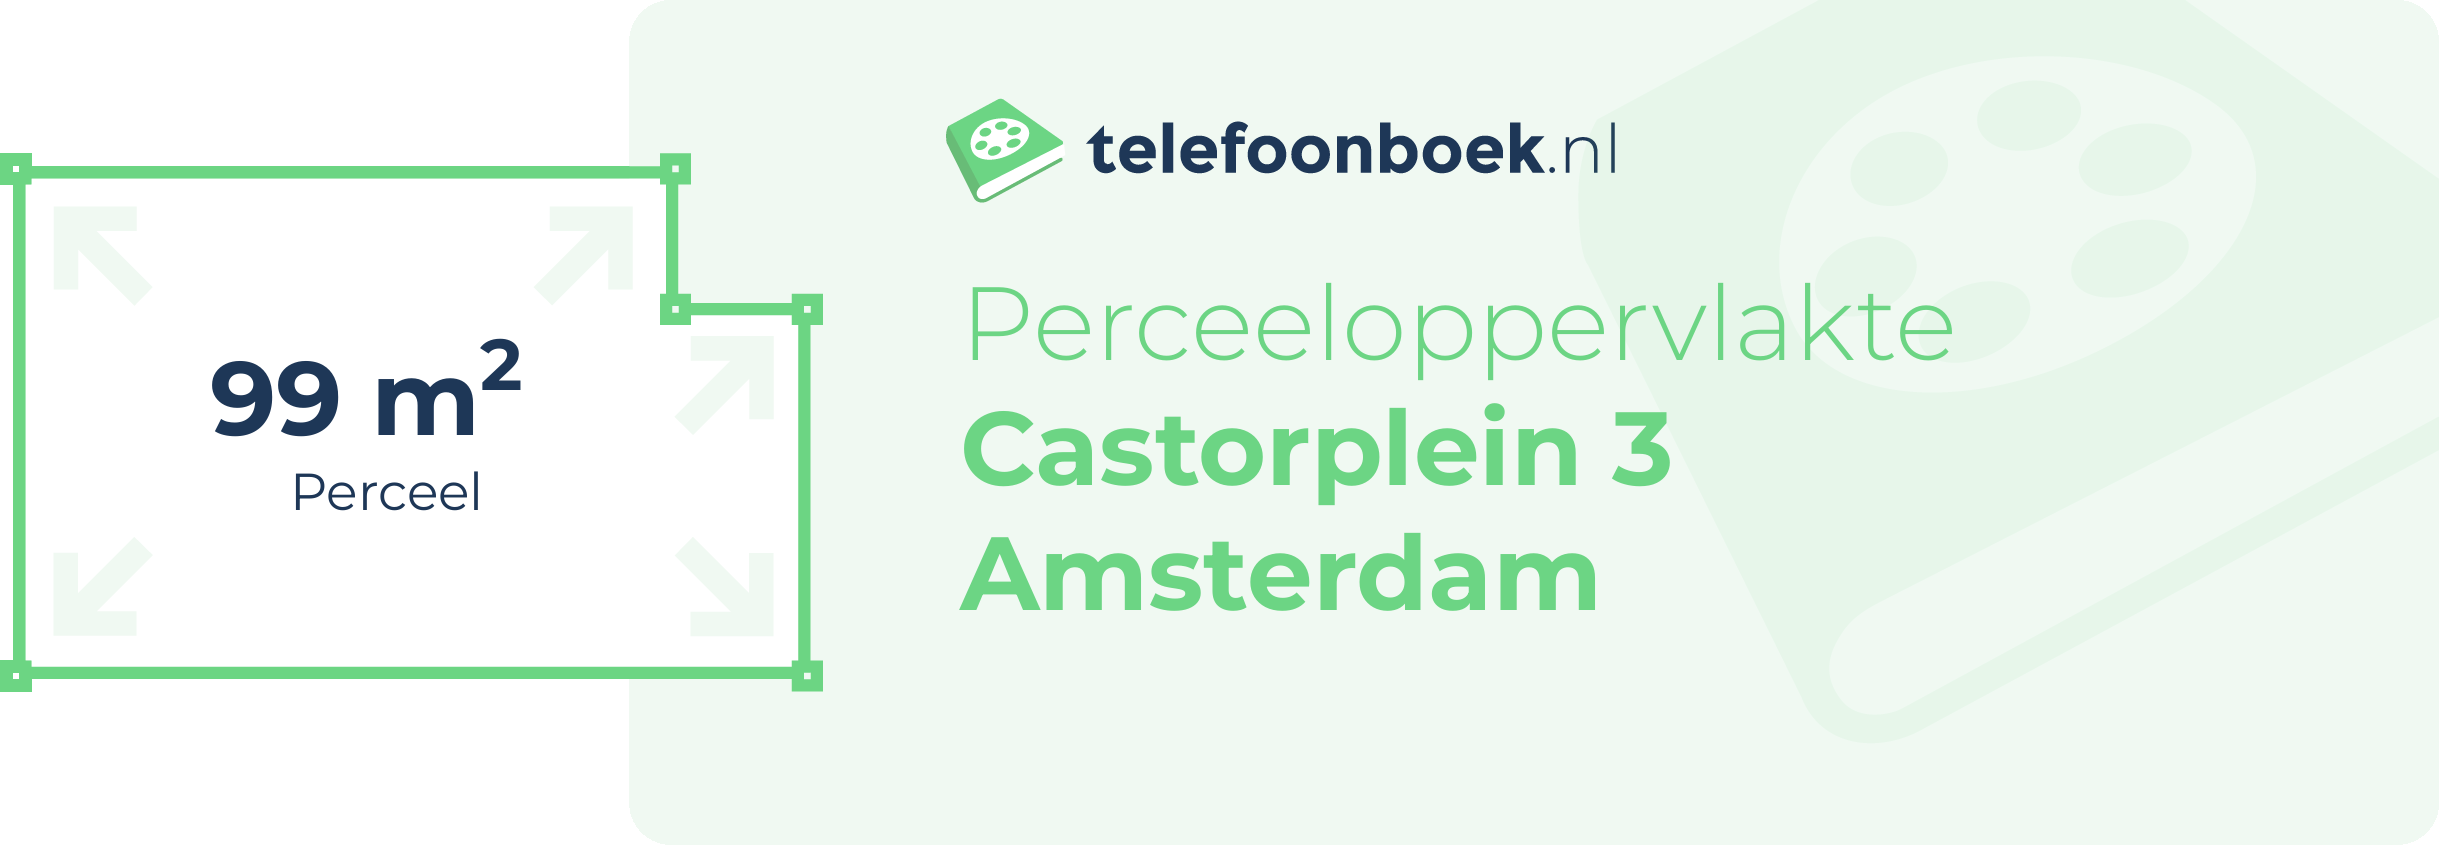 Perceeloppervlakte Castorplein 3 Amsterdam